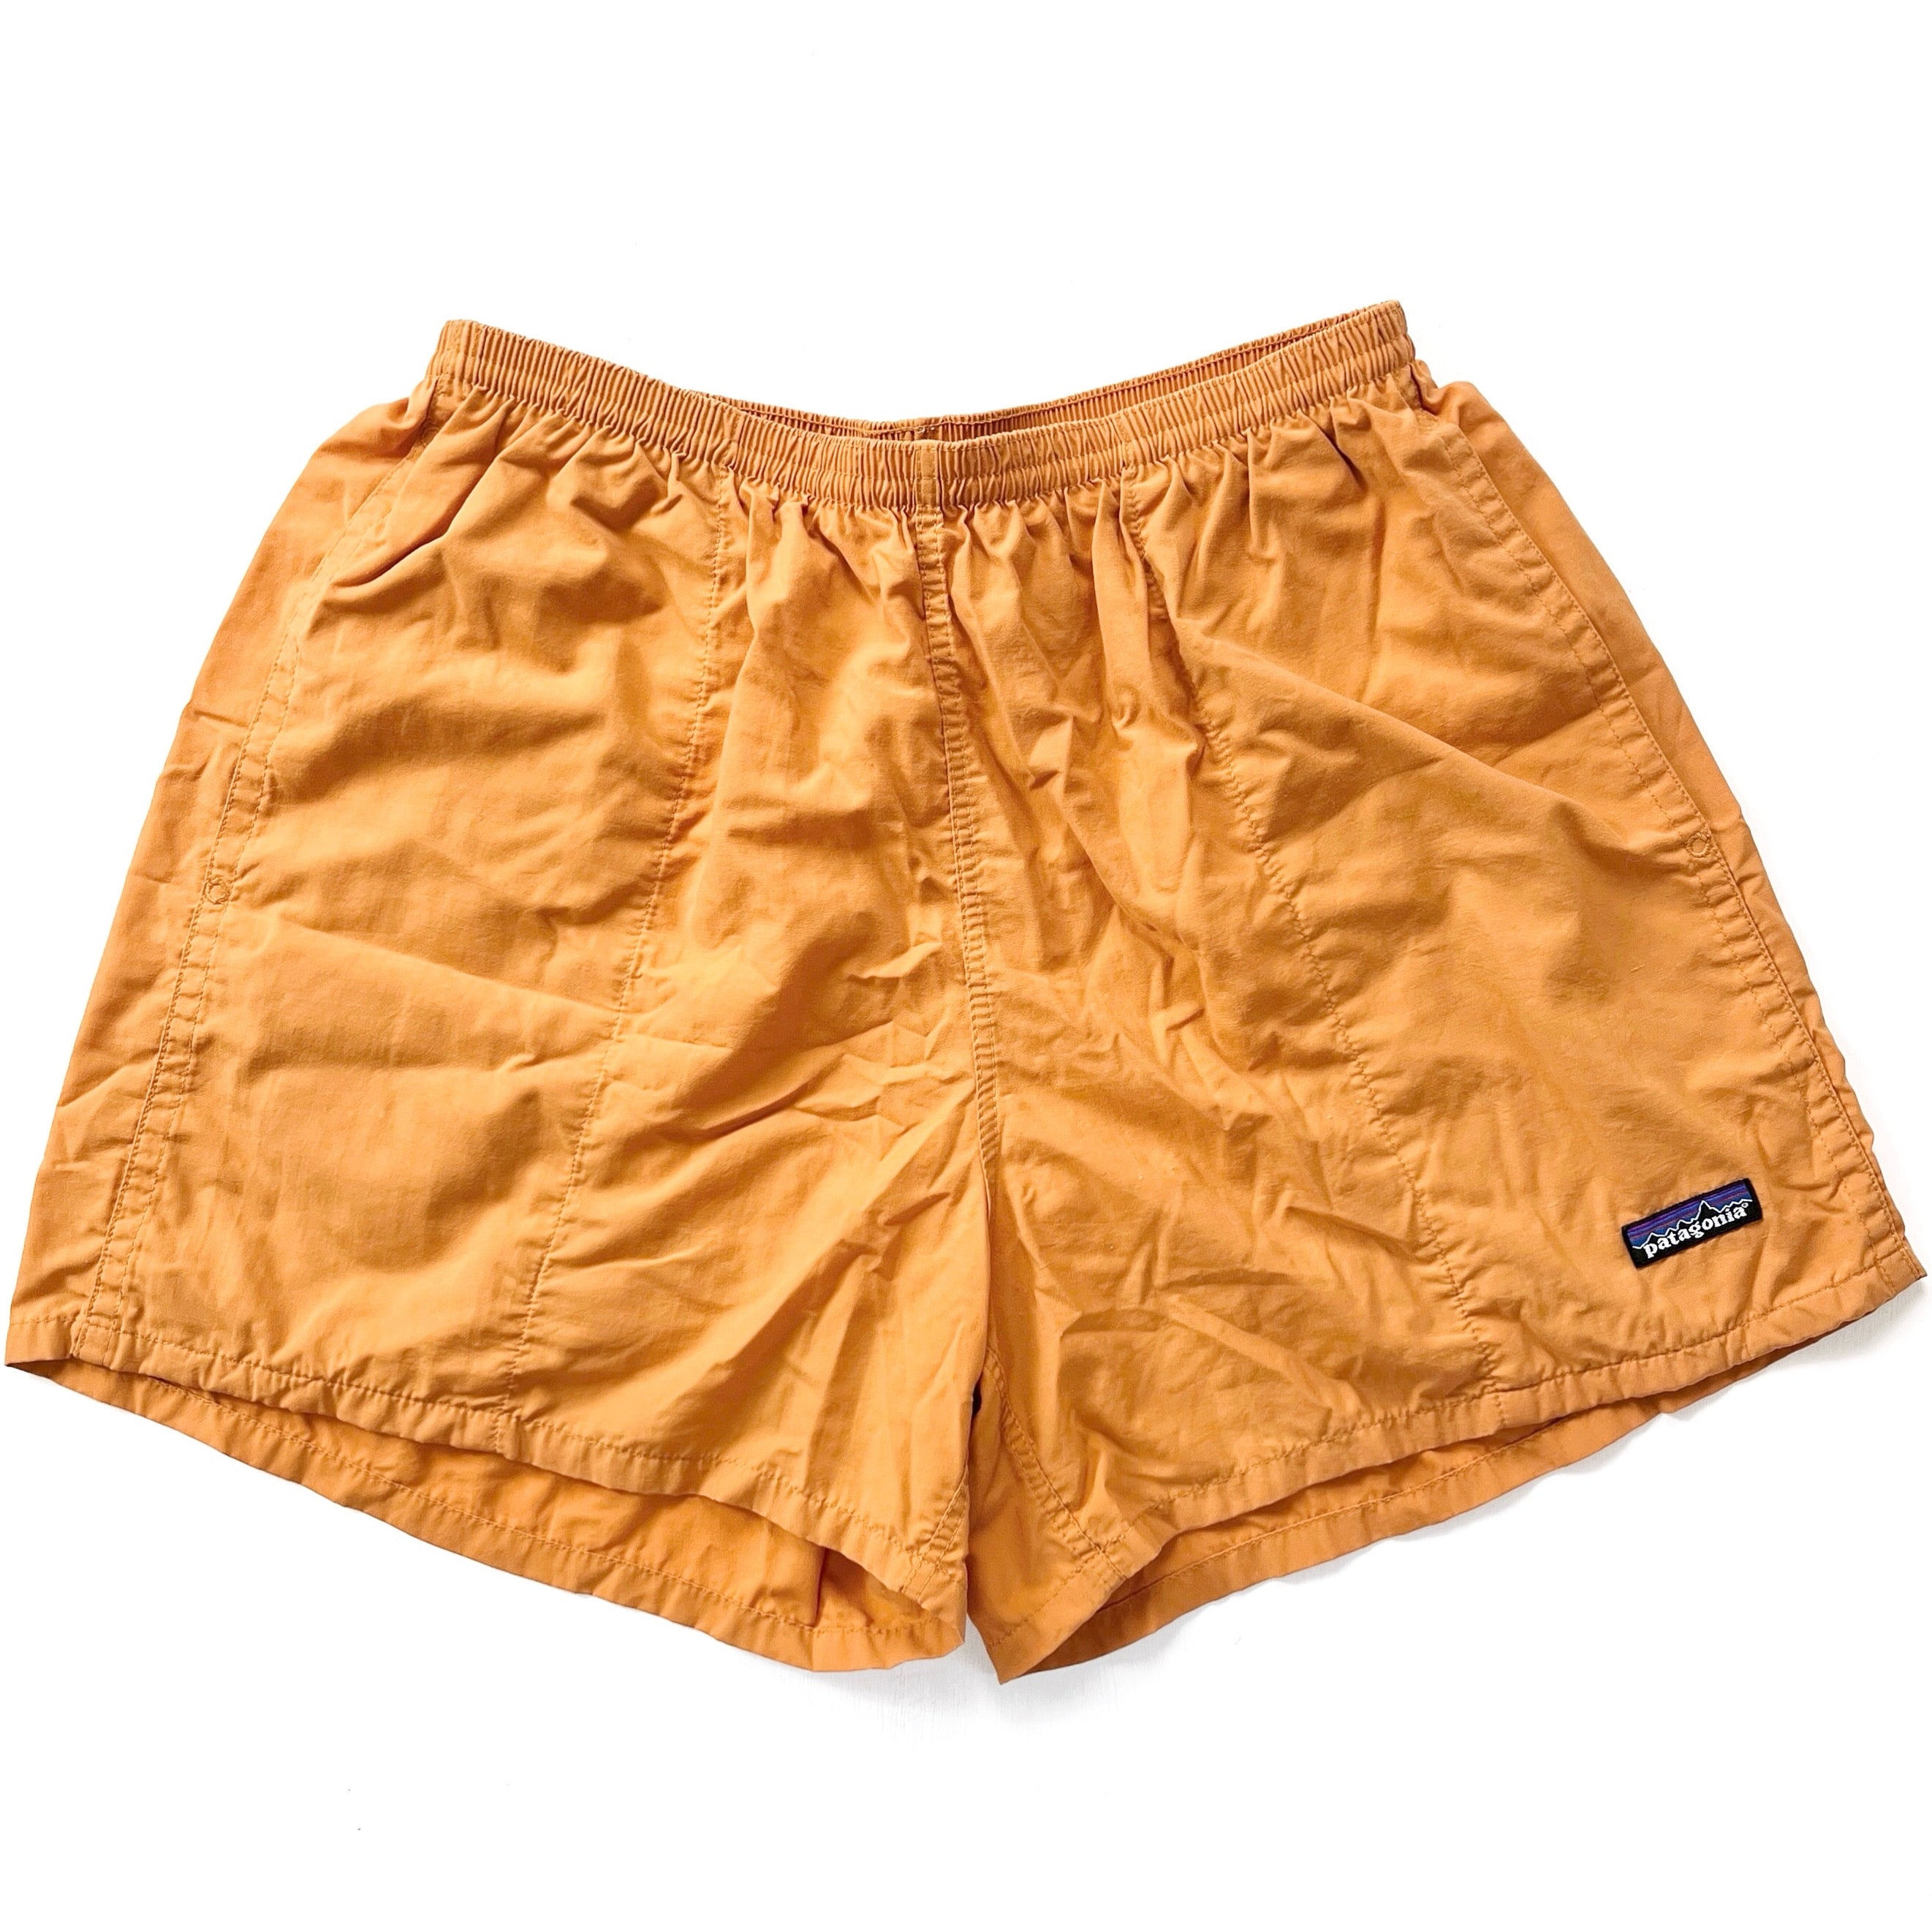 2005 Patagonia Mens 5” Nylon Baggies Shorts, Burnt Orange (L)